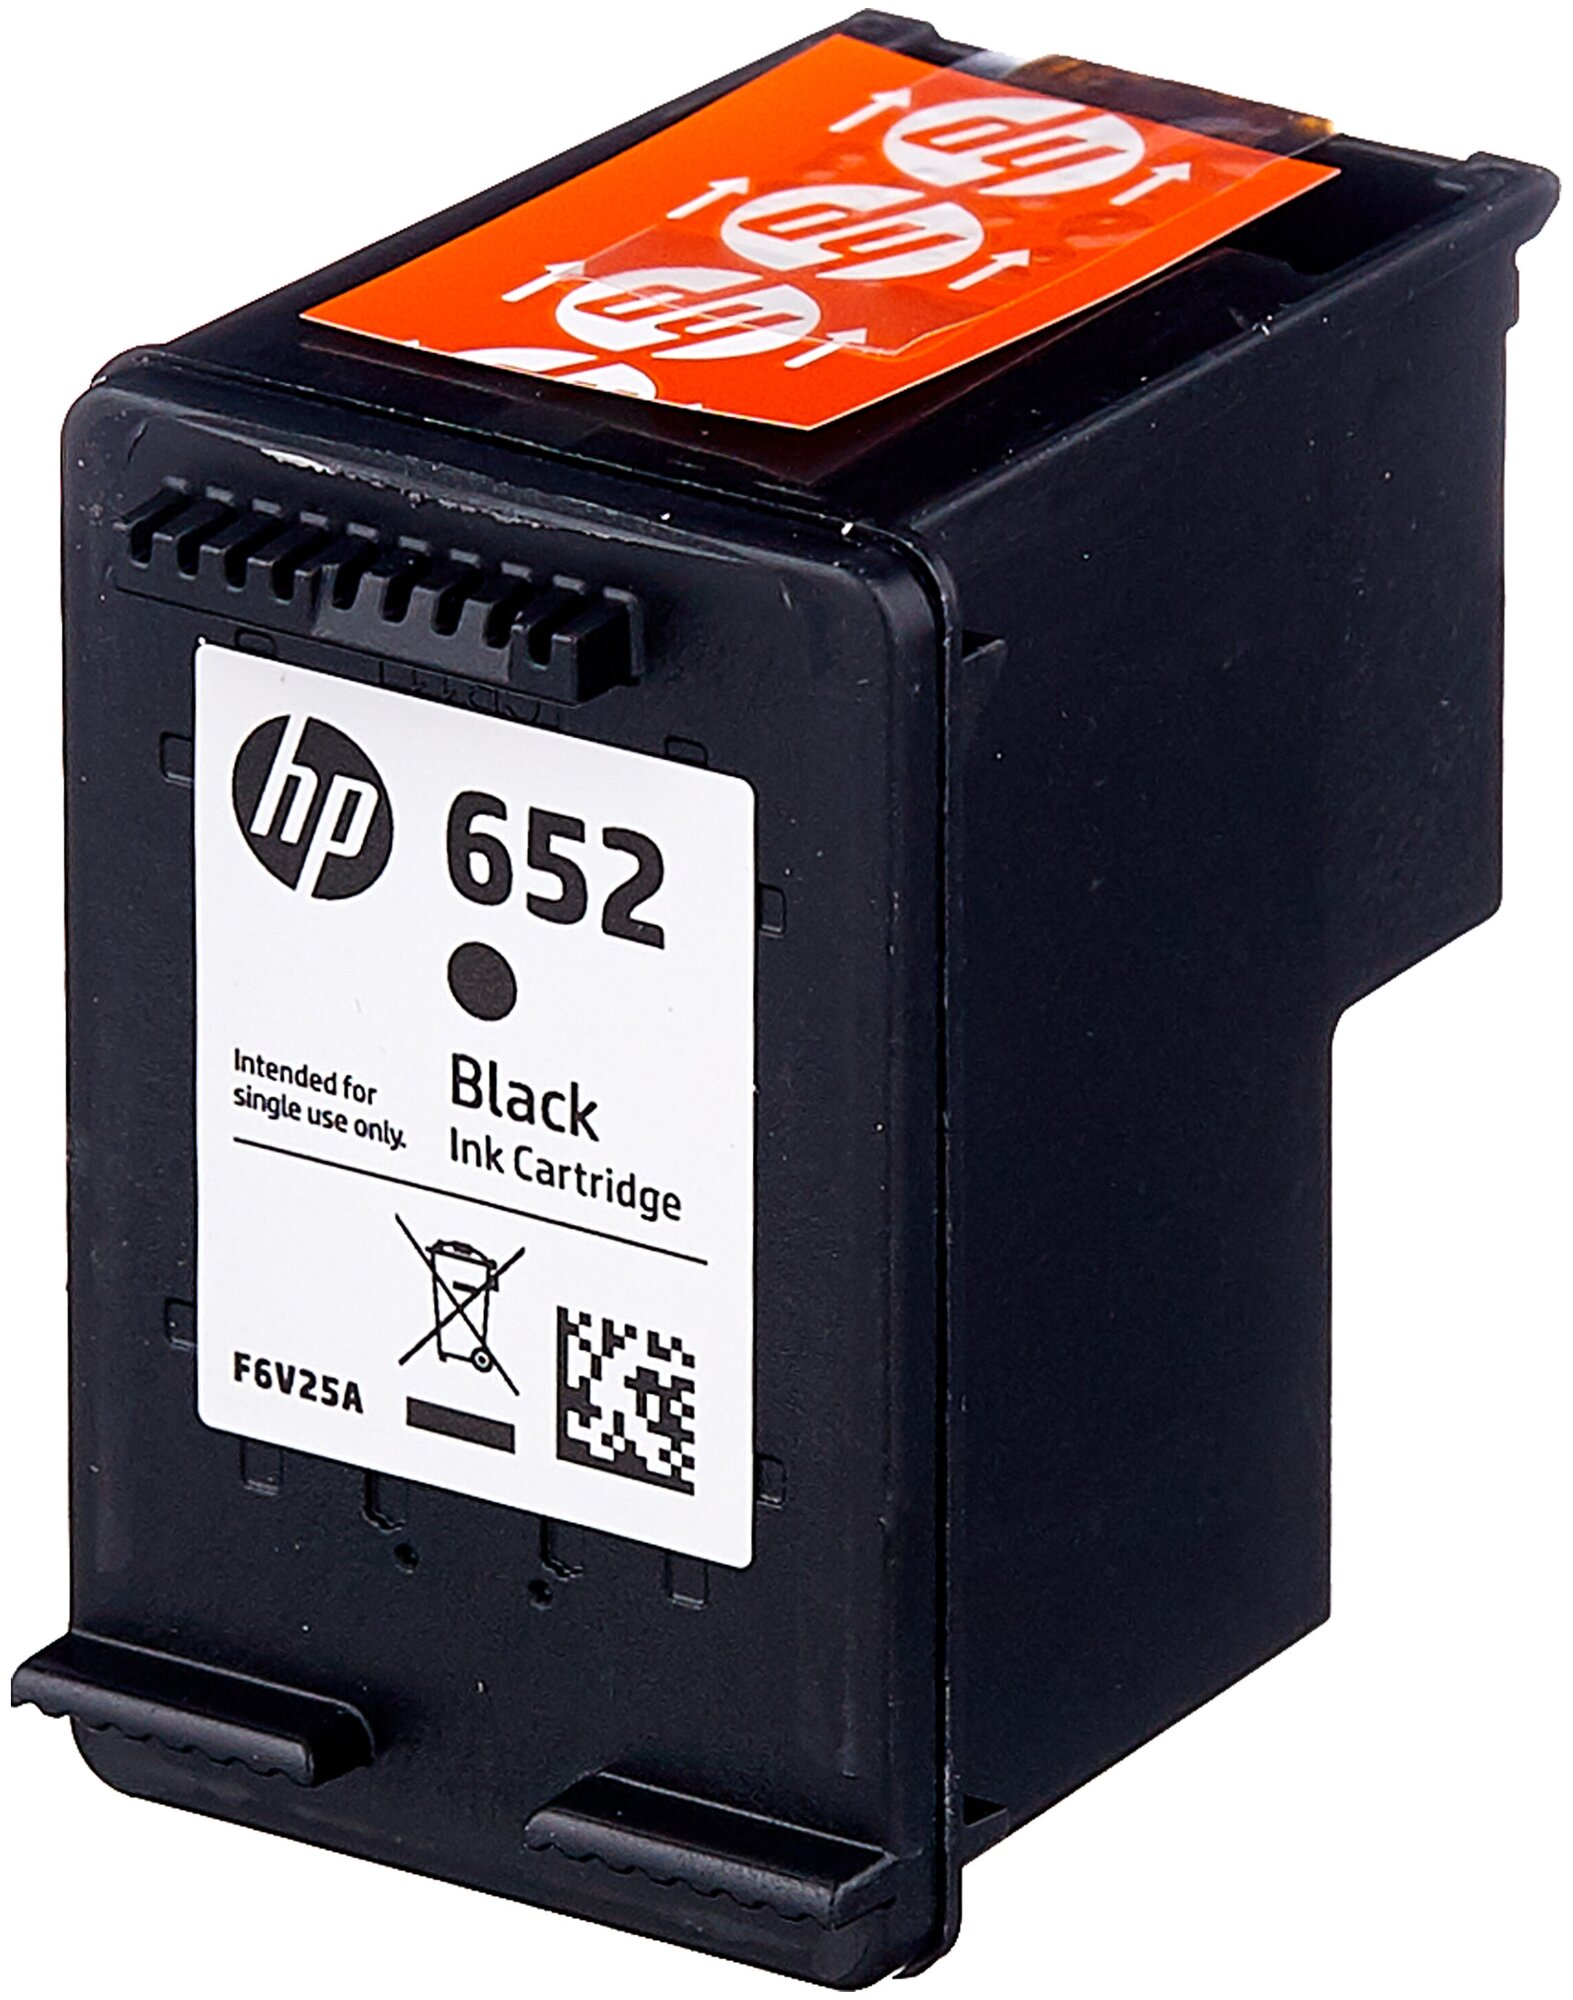 Картридж HP 652 (F6V25AE), черный, оригинальный, для HP DeskJet Ink Advantage 2135 / 3635 / 3835 / 4535 / 4675 / 1115